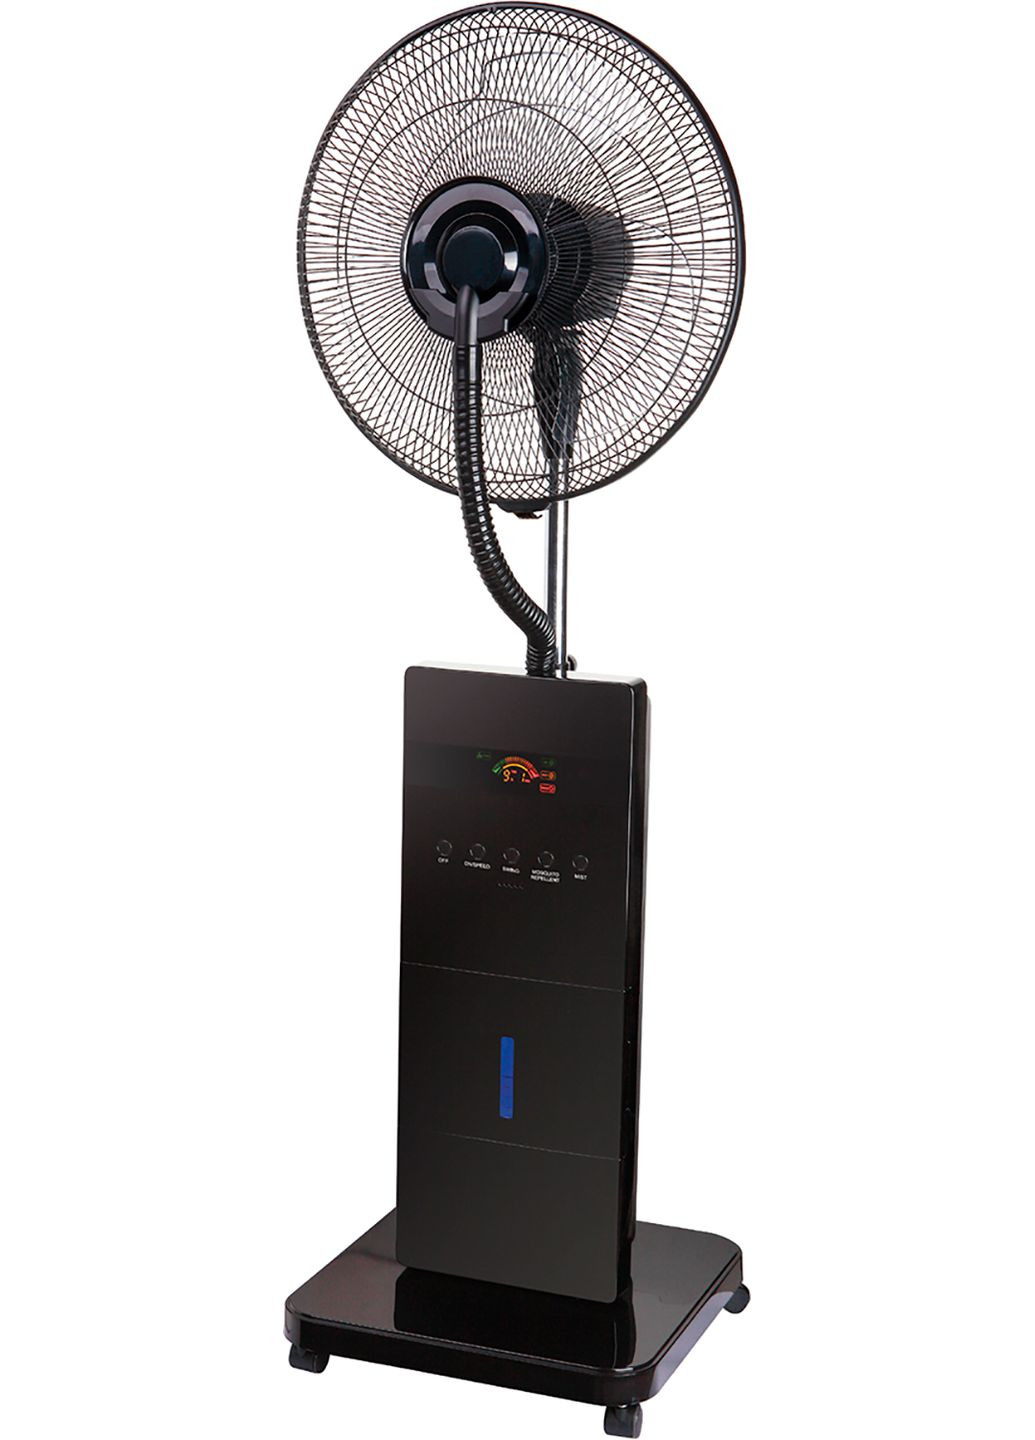 Вентилятор підлоговий з функцією холодної пари FNMX1B Ardesto (293516959)